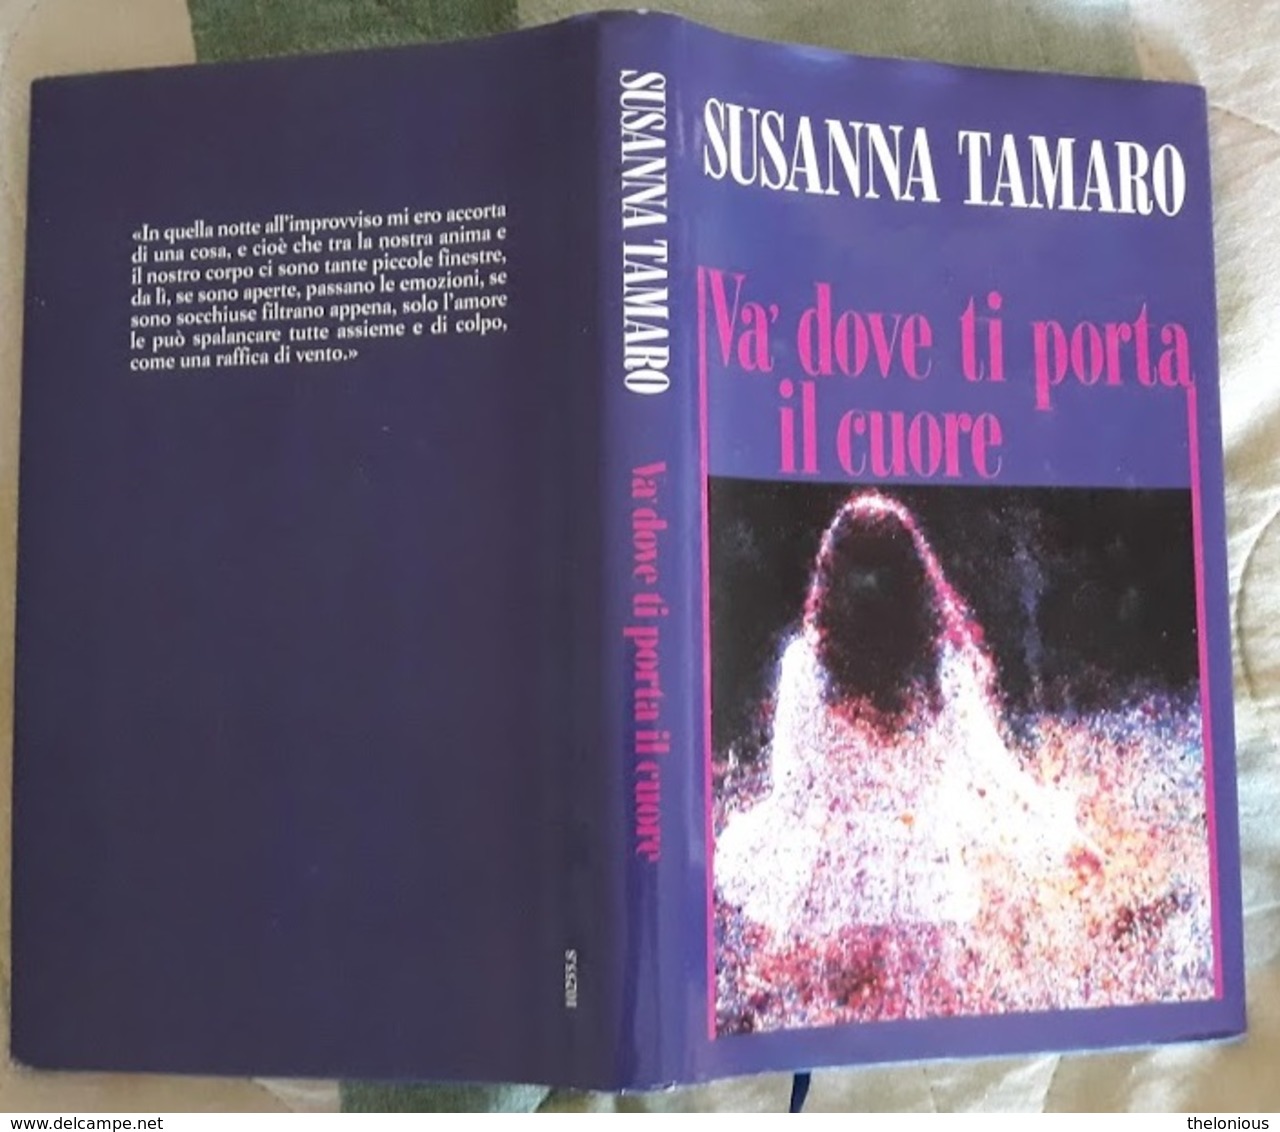 # Susanna Tamaro - VA' DOVE TI PORTA IL CUORE - 1995 - Classici